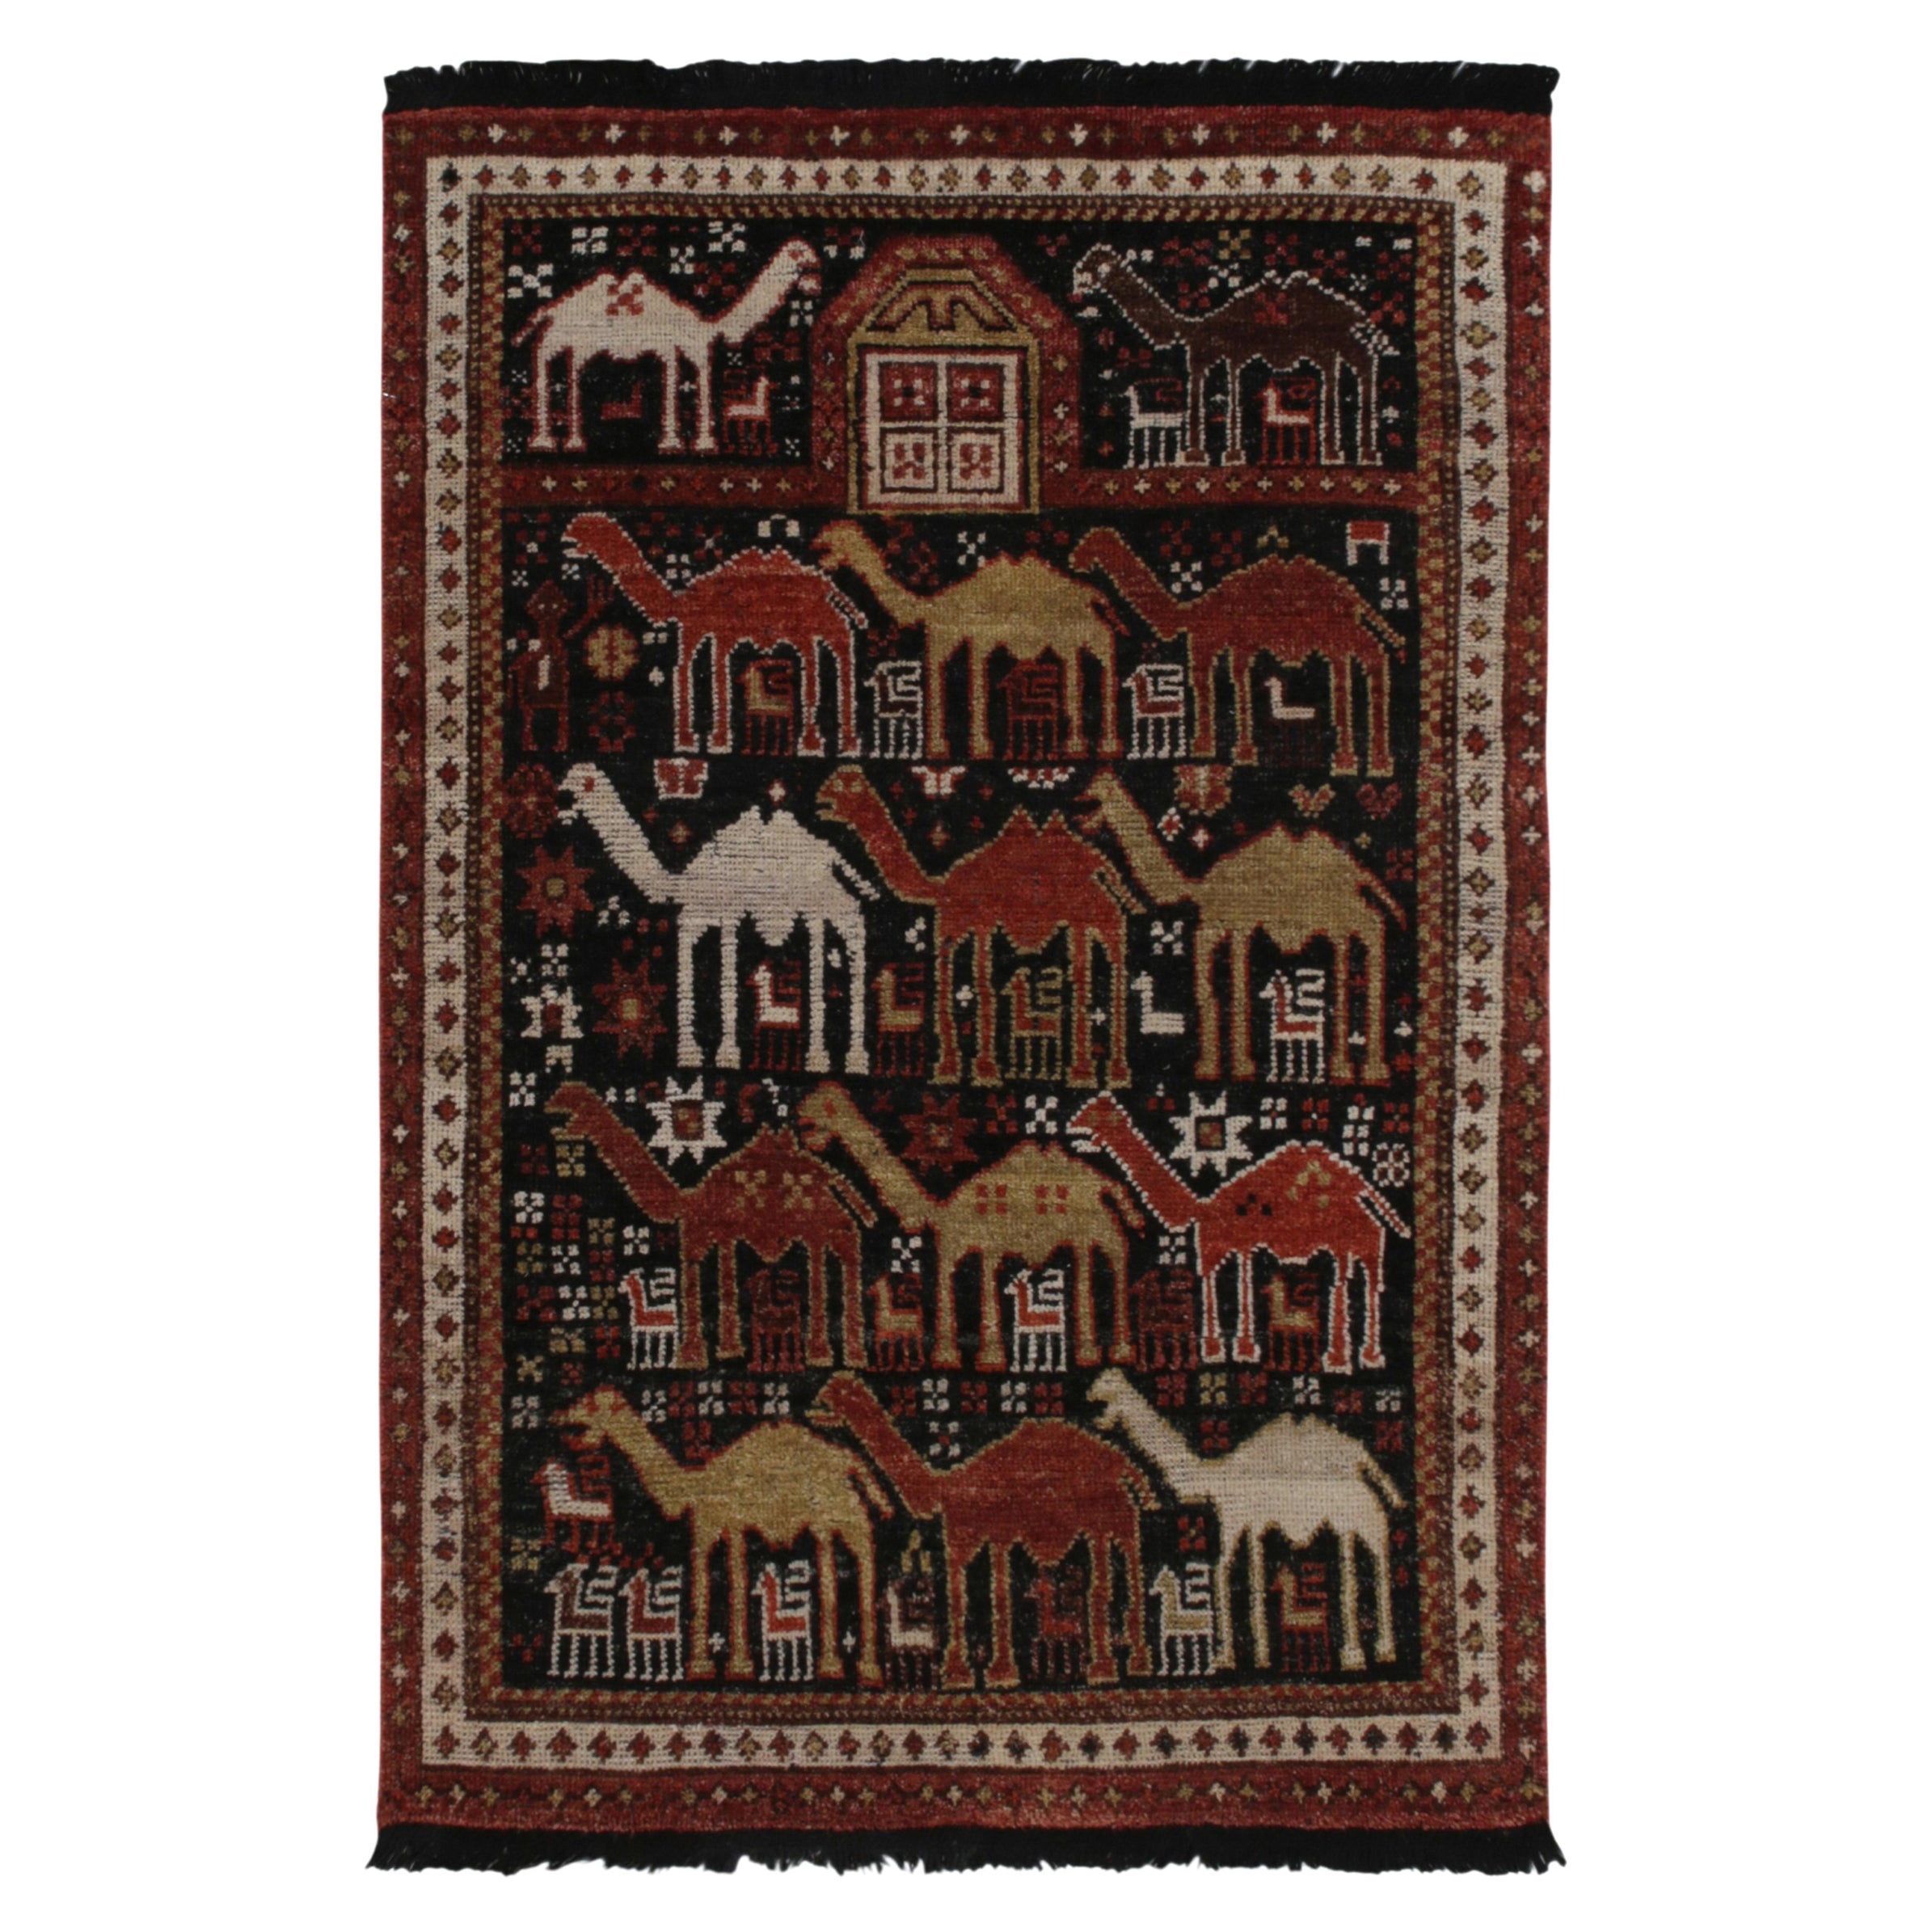 Rug & Kilim’s Shirvan Tribal Style Rug in Red, Orange & Brown Pictorial Patterns